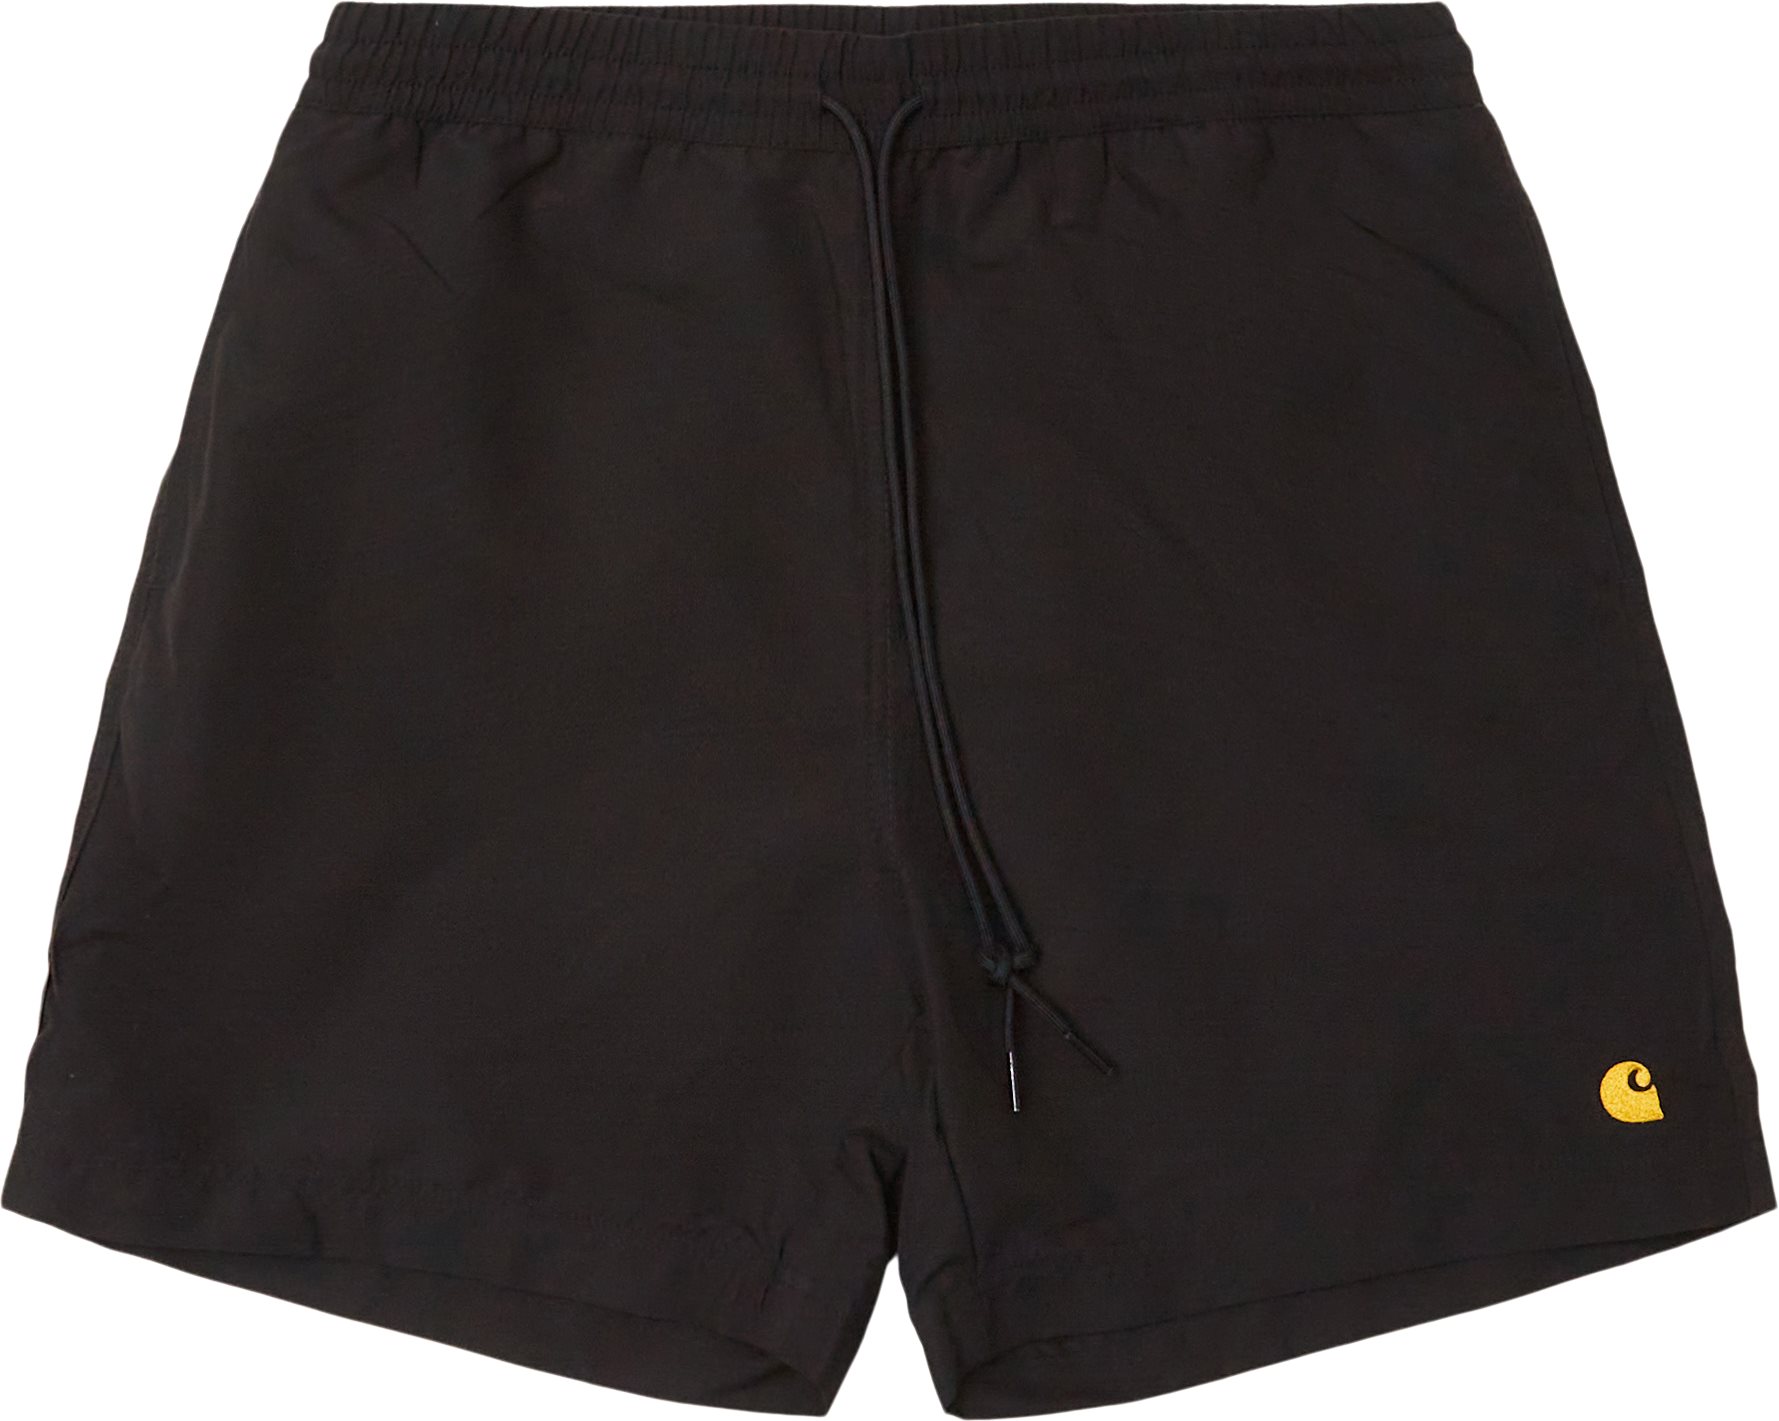 Chase Badebukser I026235 - Shorts - Regular fit - Black